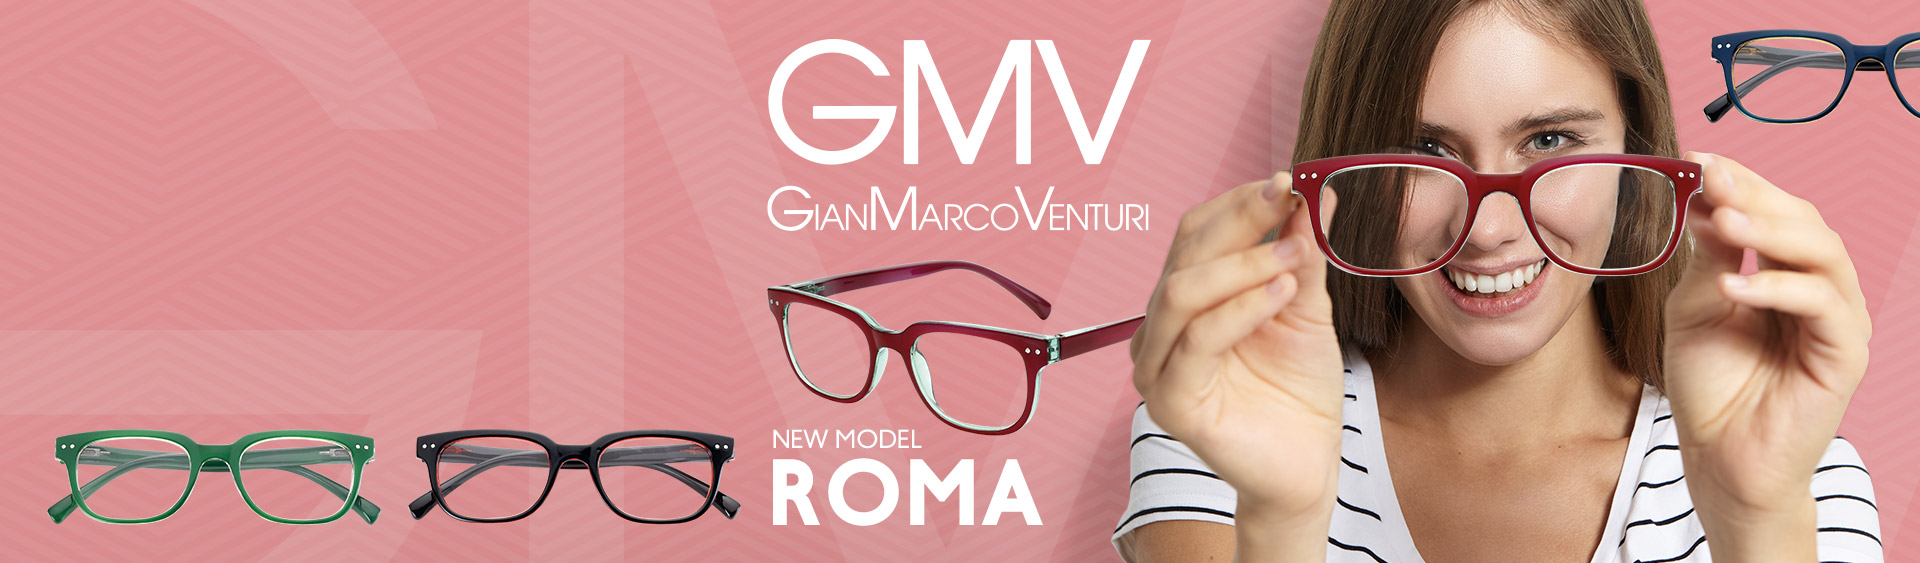 Νέα σχέδια γυαλιά ανάγνωσης GMV!